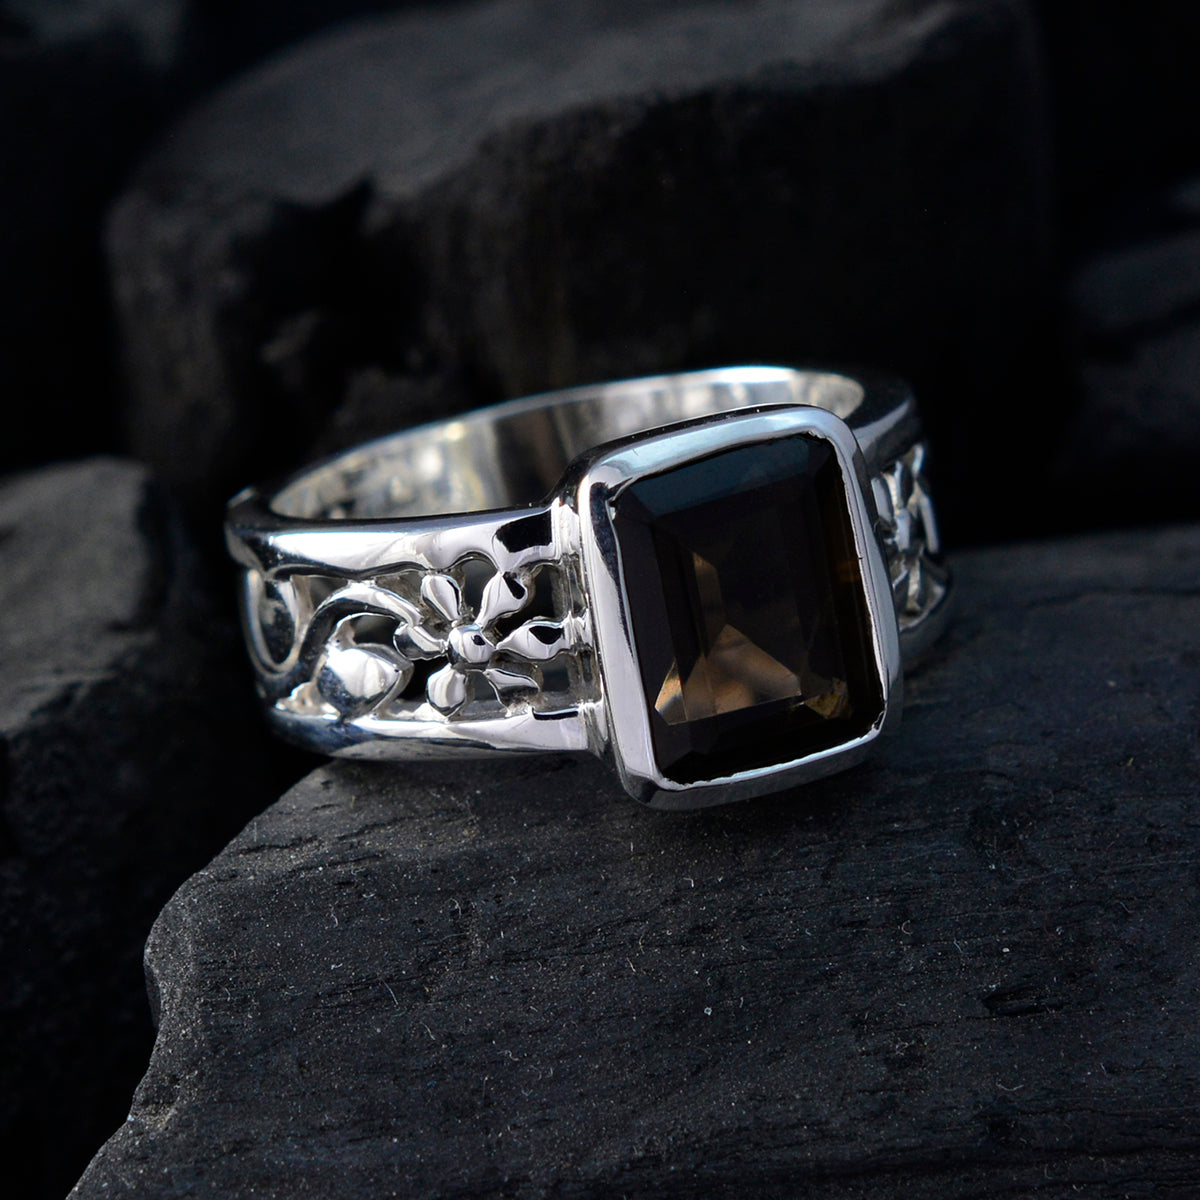 pietre preziose per gioielli con anello in argento sterling 925 con quarzo fumé eccellente